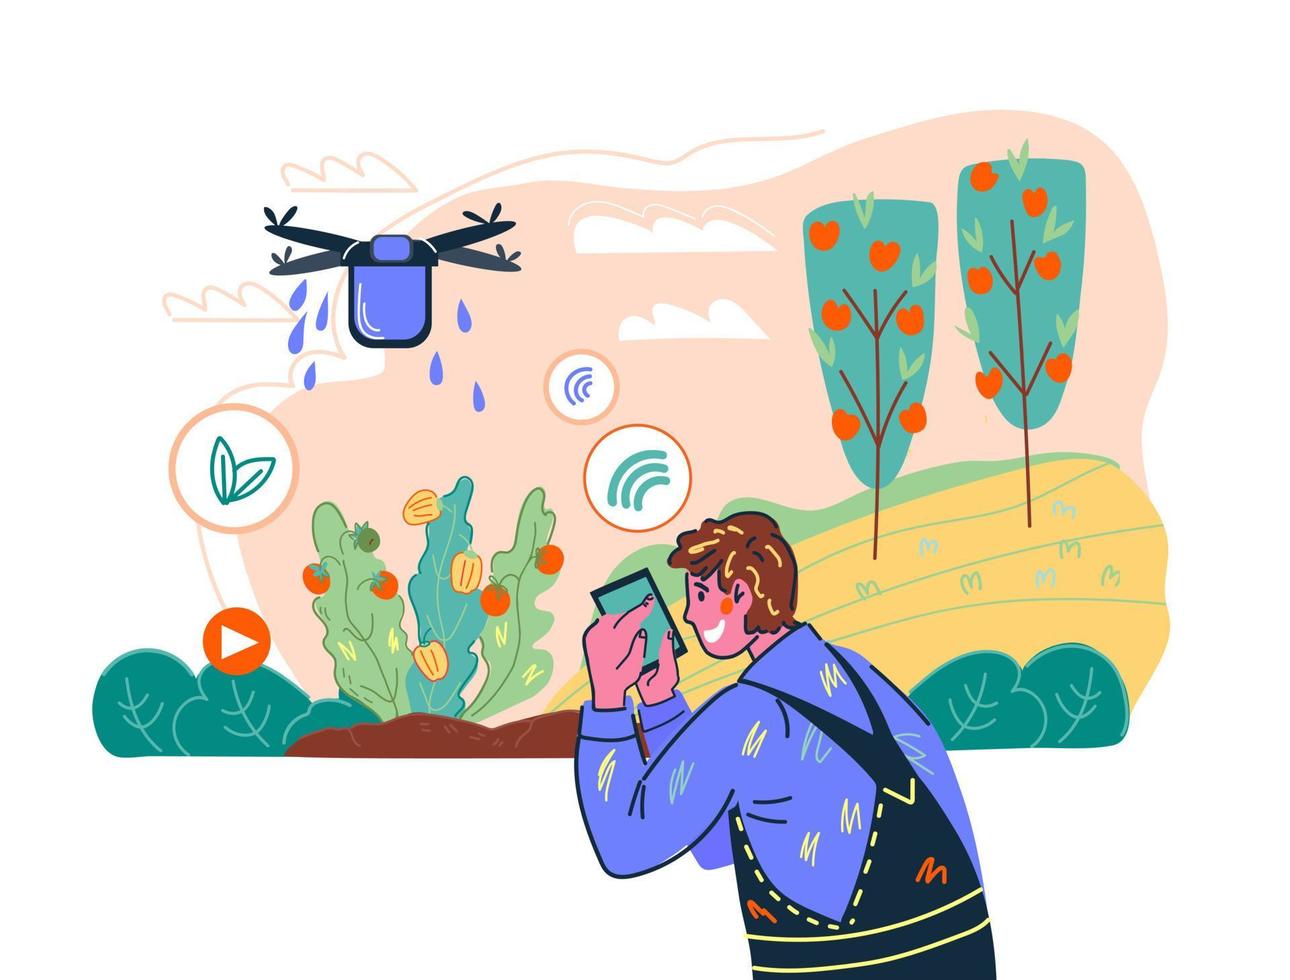 sistema de agricultura inteligente e tecnologia sem fio agrícola com o agricultor controlando remotamente o drone. inovação industrial à distância para a produção agrícola. ilustração vetorial dos desenhos animados. vetor